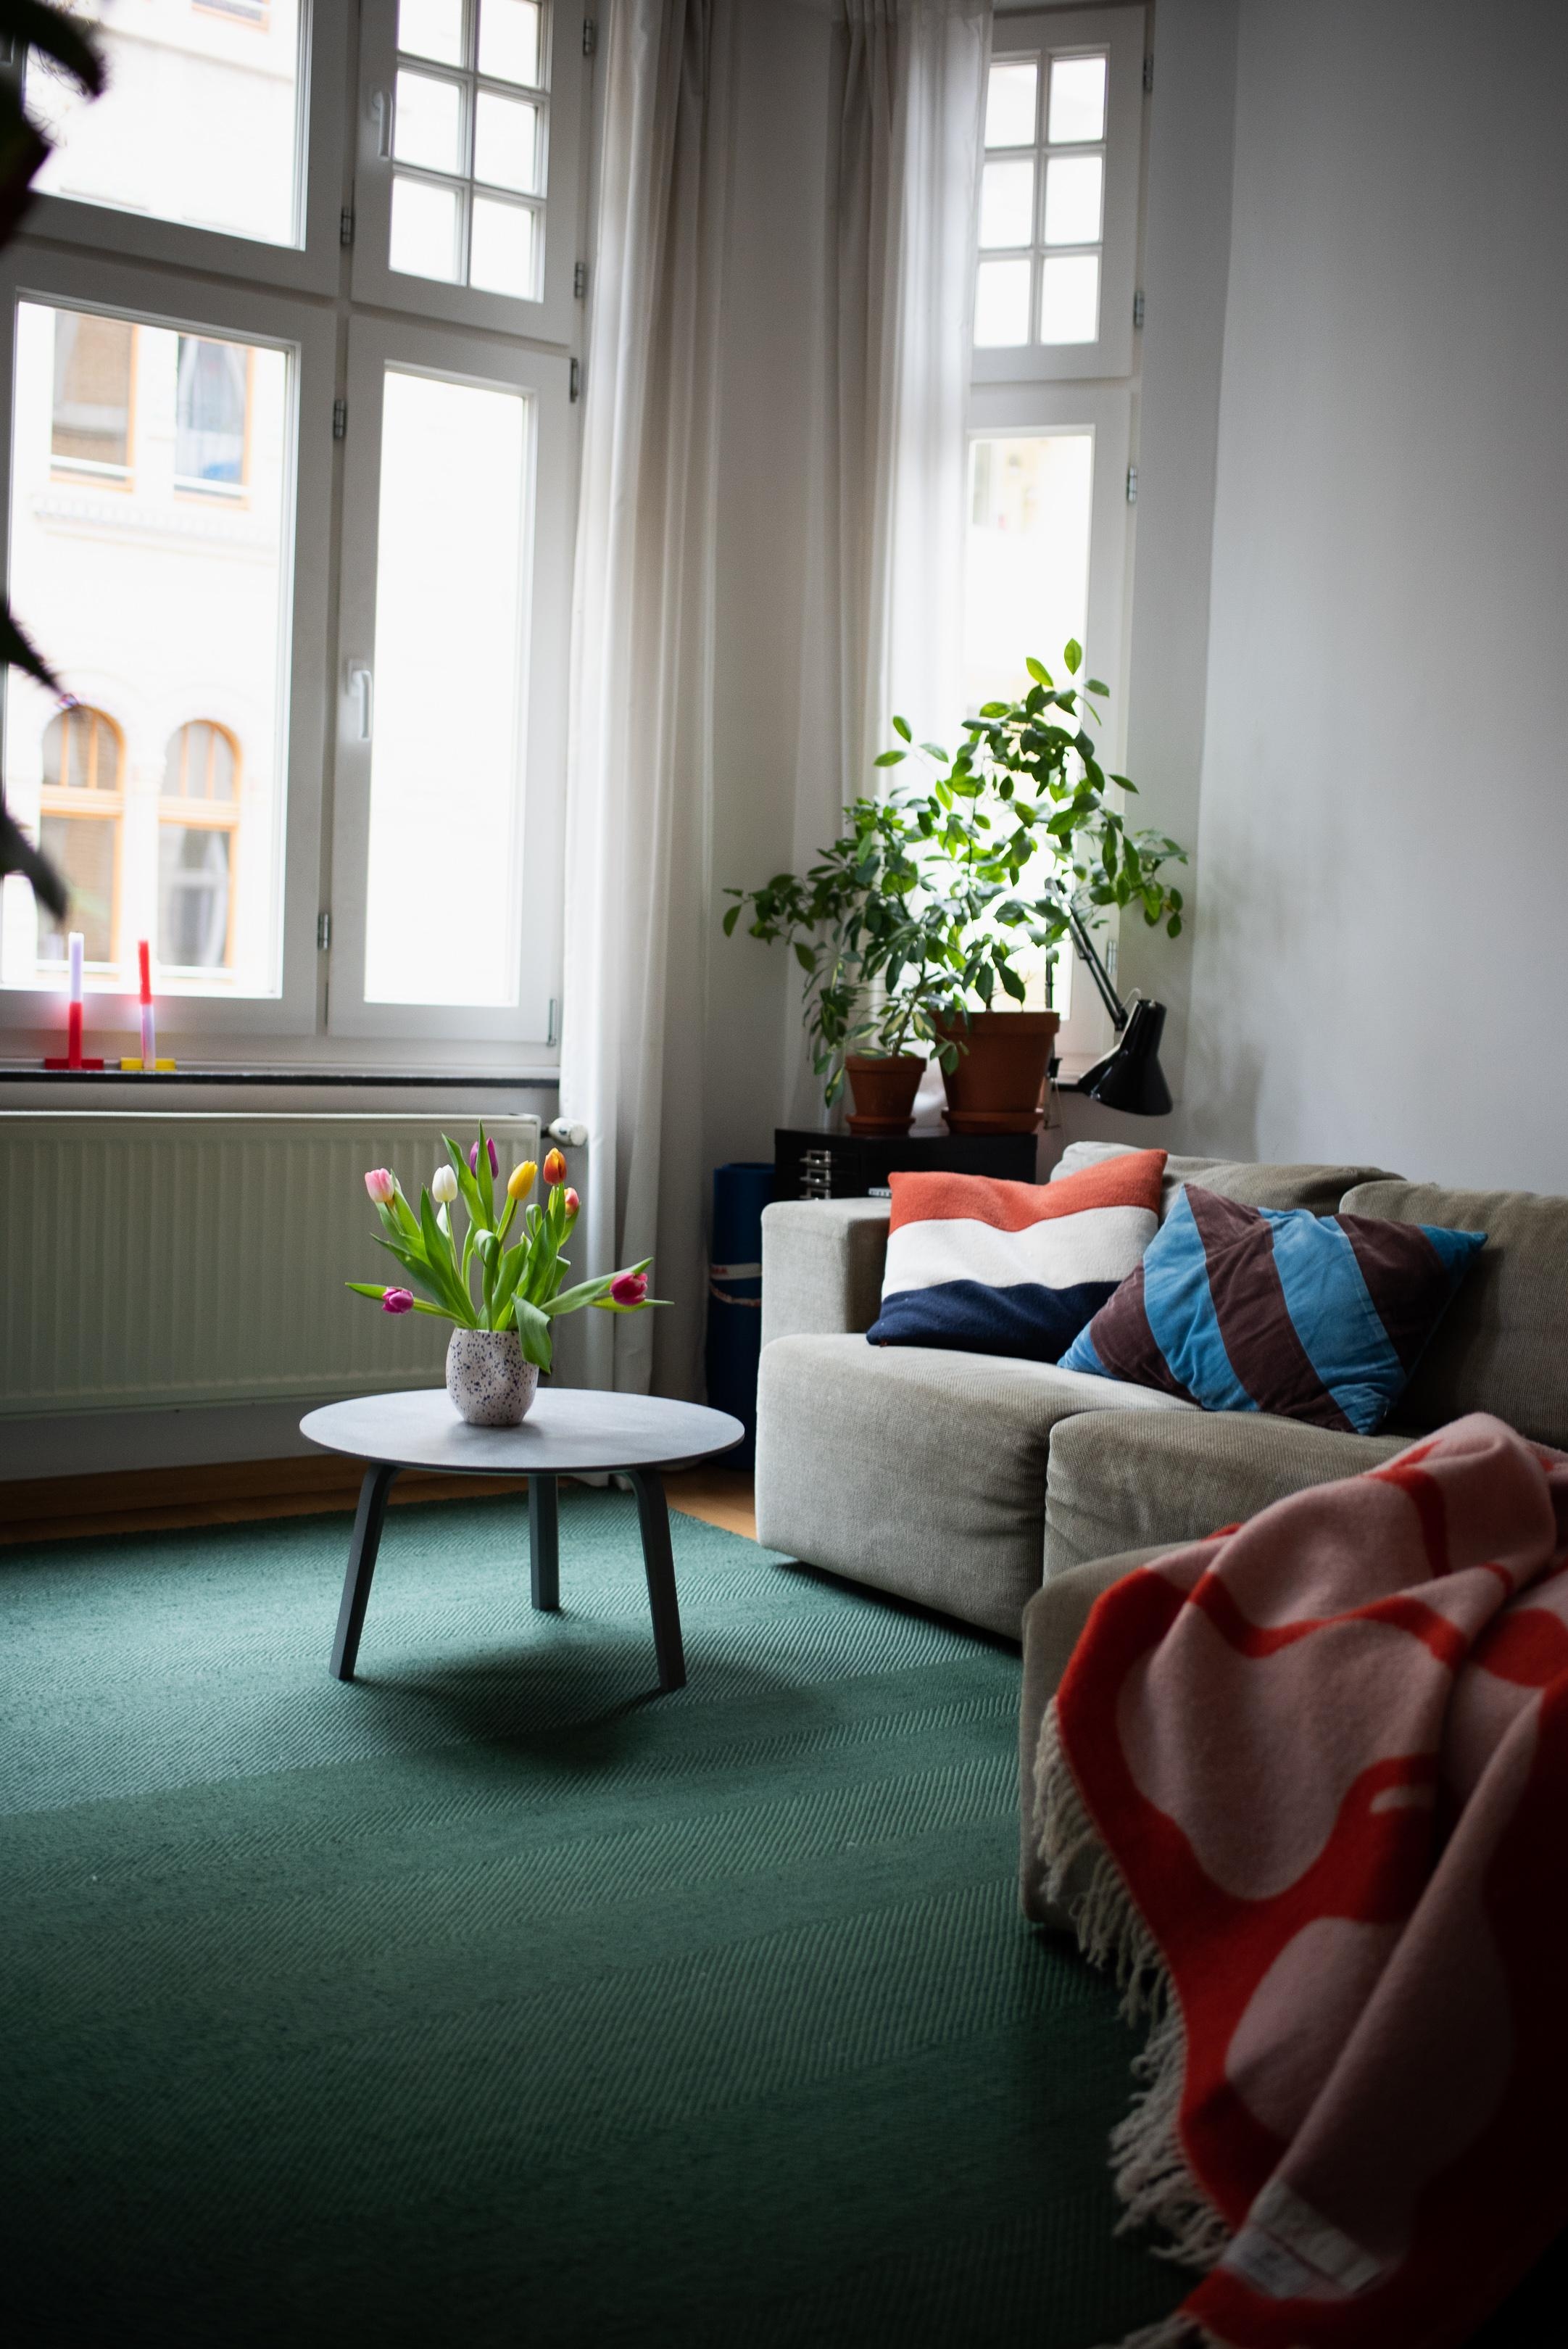 Kommt gut in die sonnige Woche #wohnzimmer #livingroom #sofaecke #altbau #tulpen